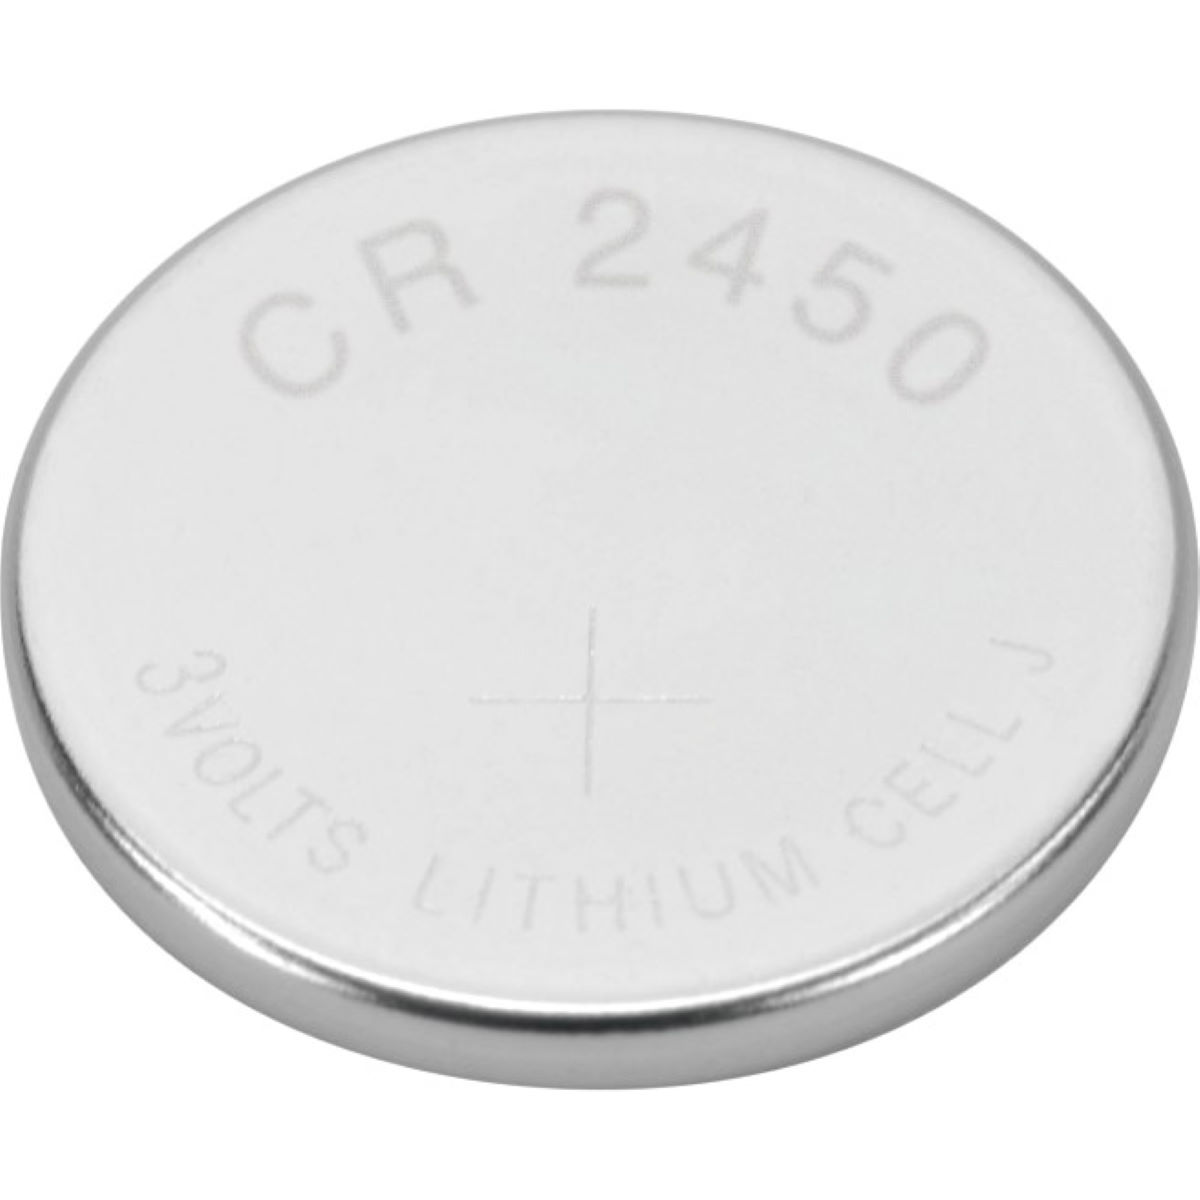 Sigma CR2450 Lithium Battery - Baterías y pilas